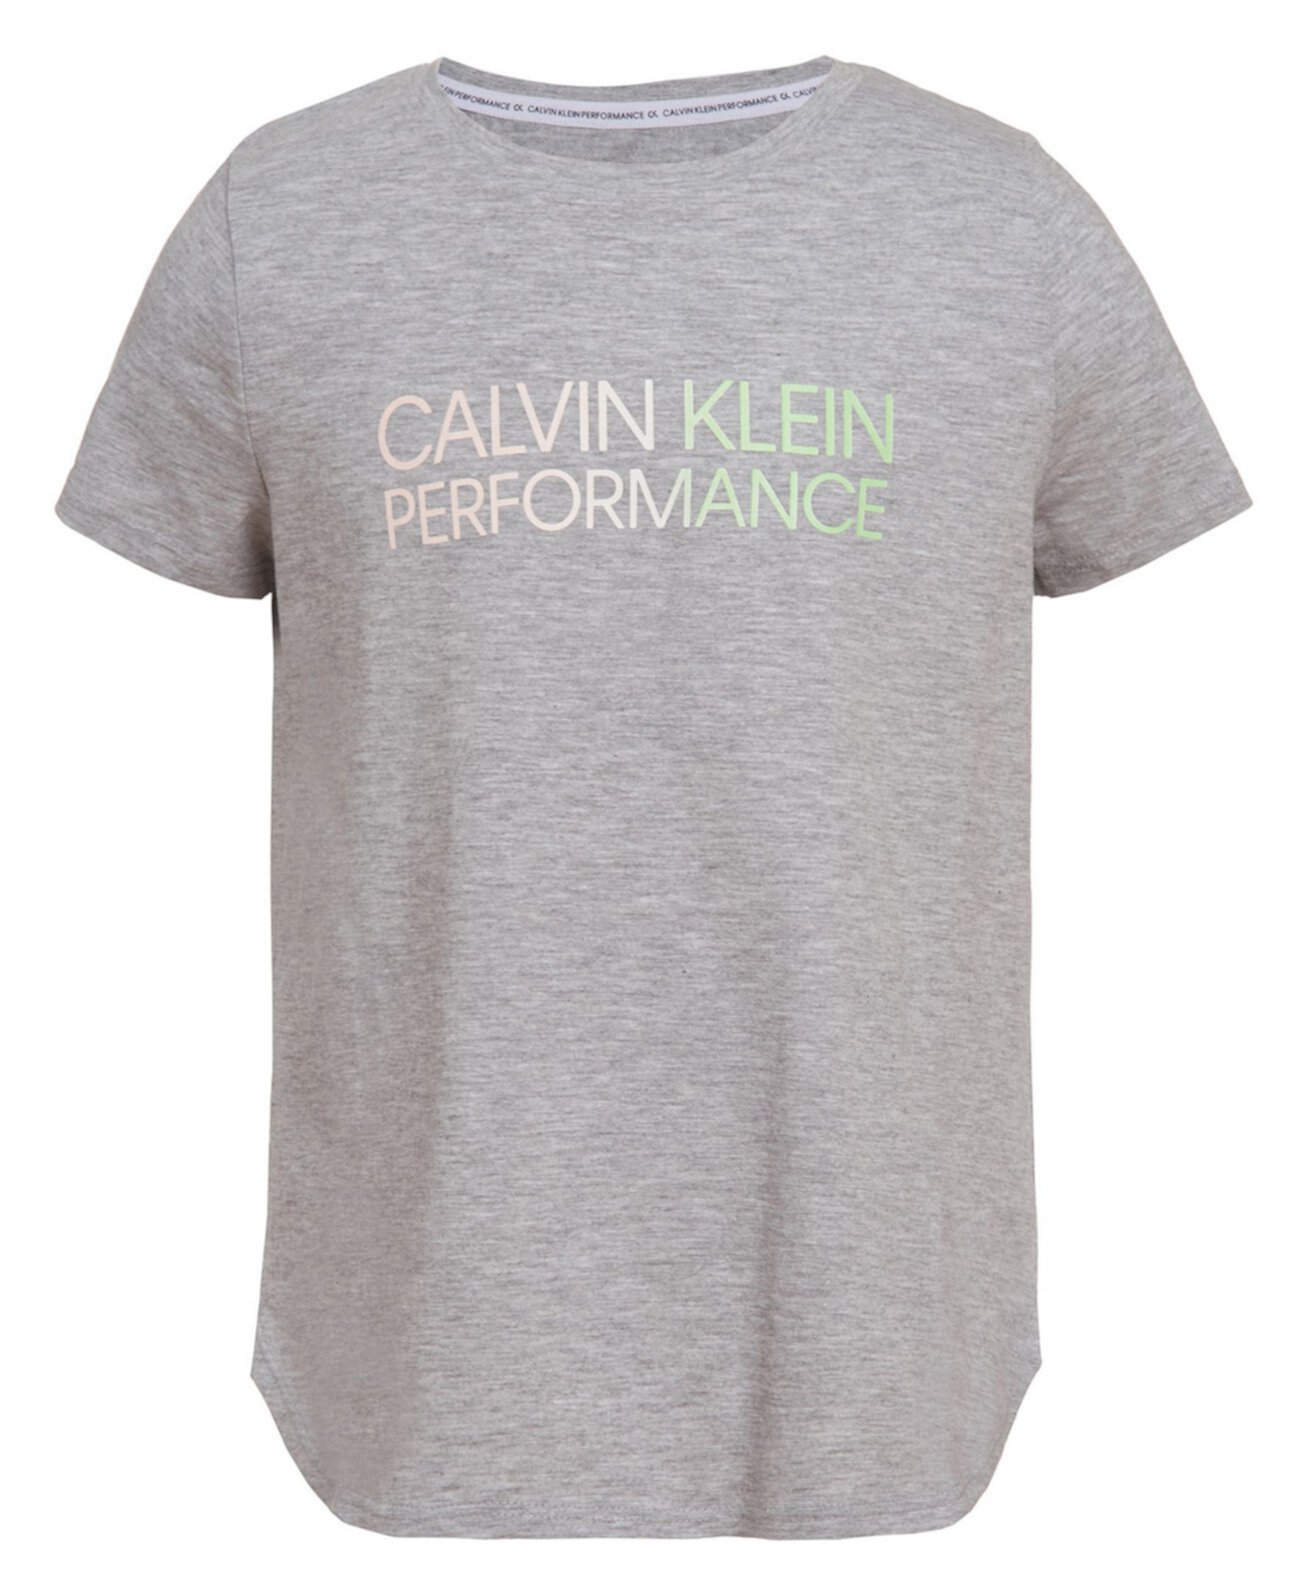 Спортивная футболка для больших девочек Calvin Klein